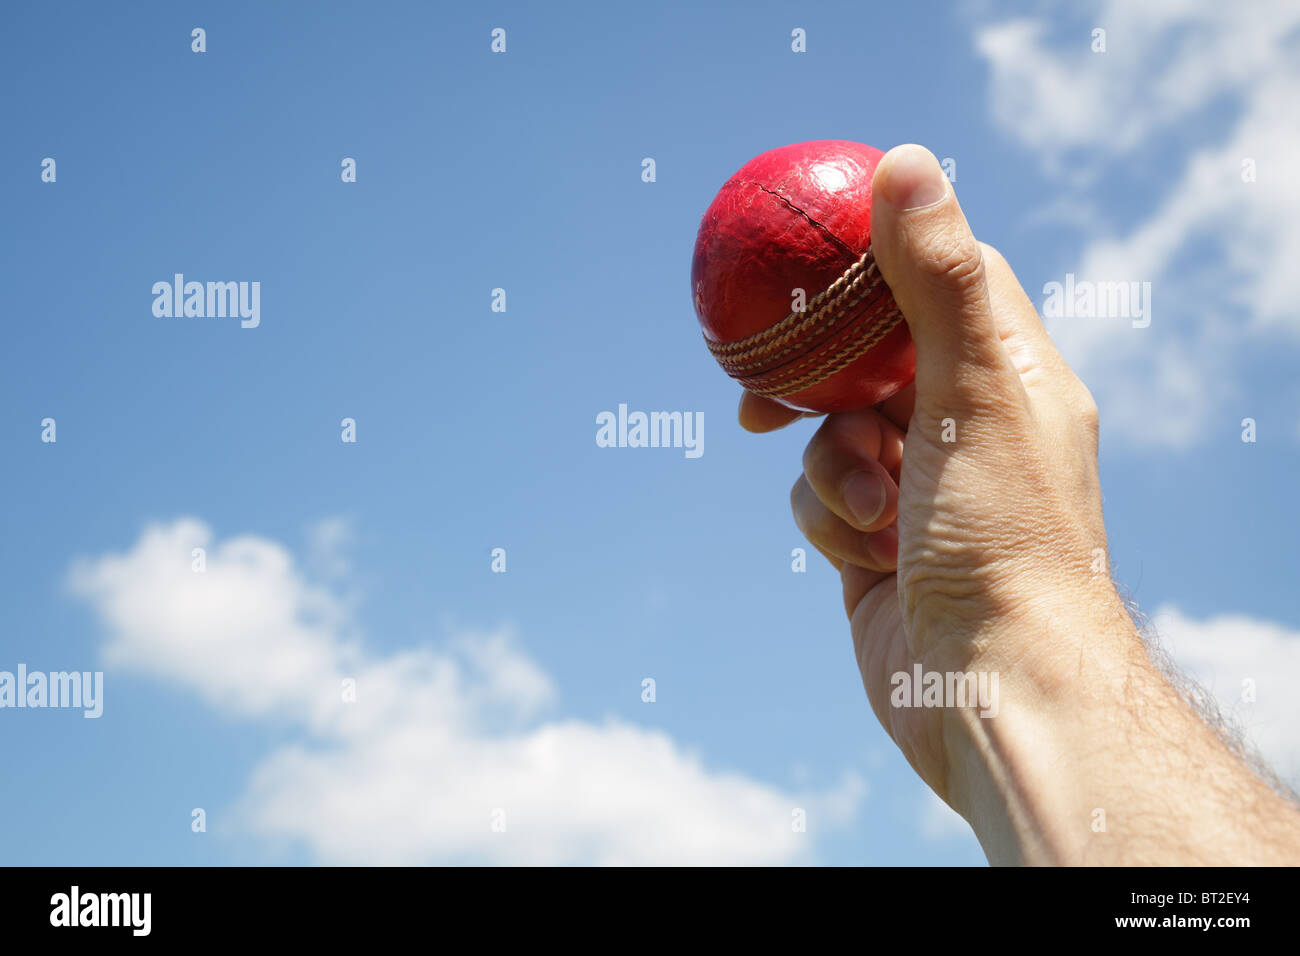 Cricket Bowler con balón en mano Foto de stock